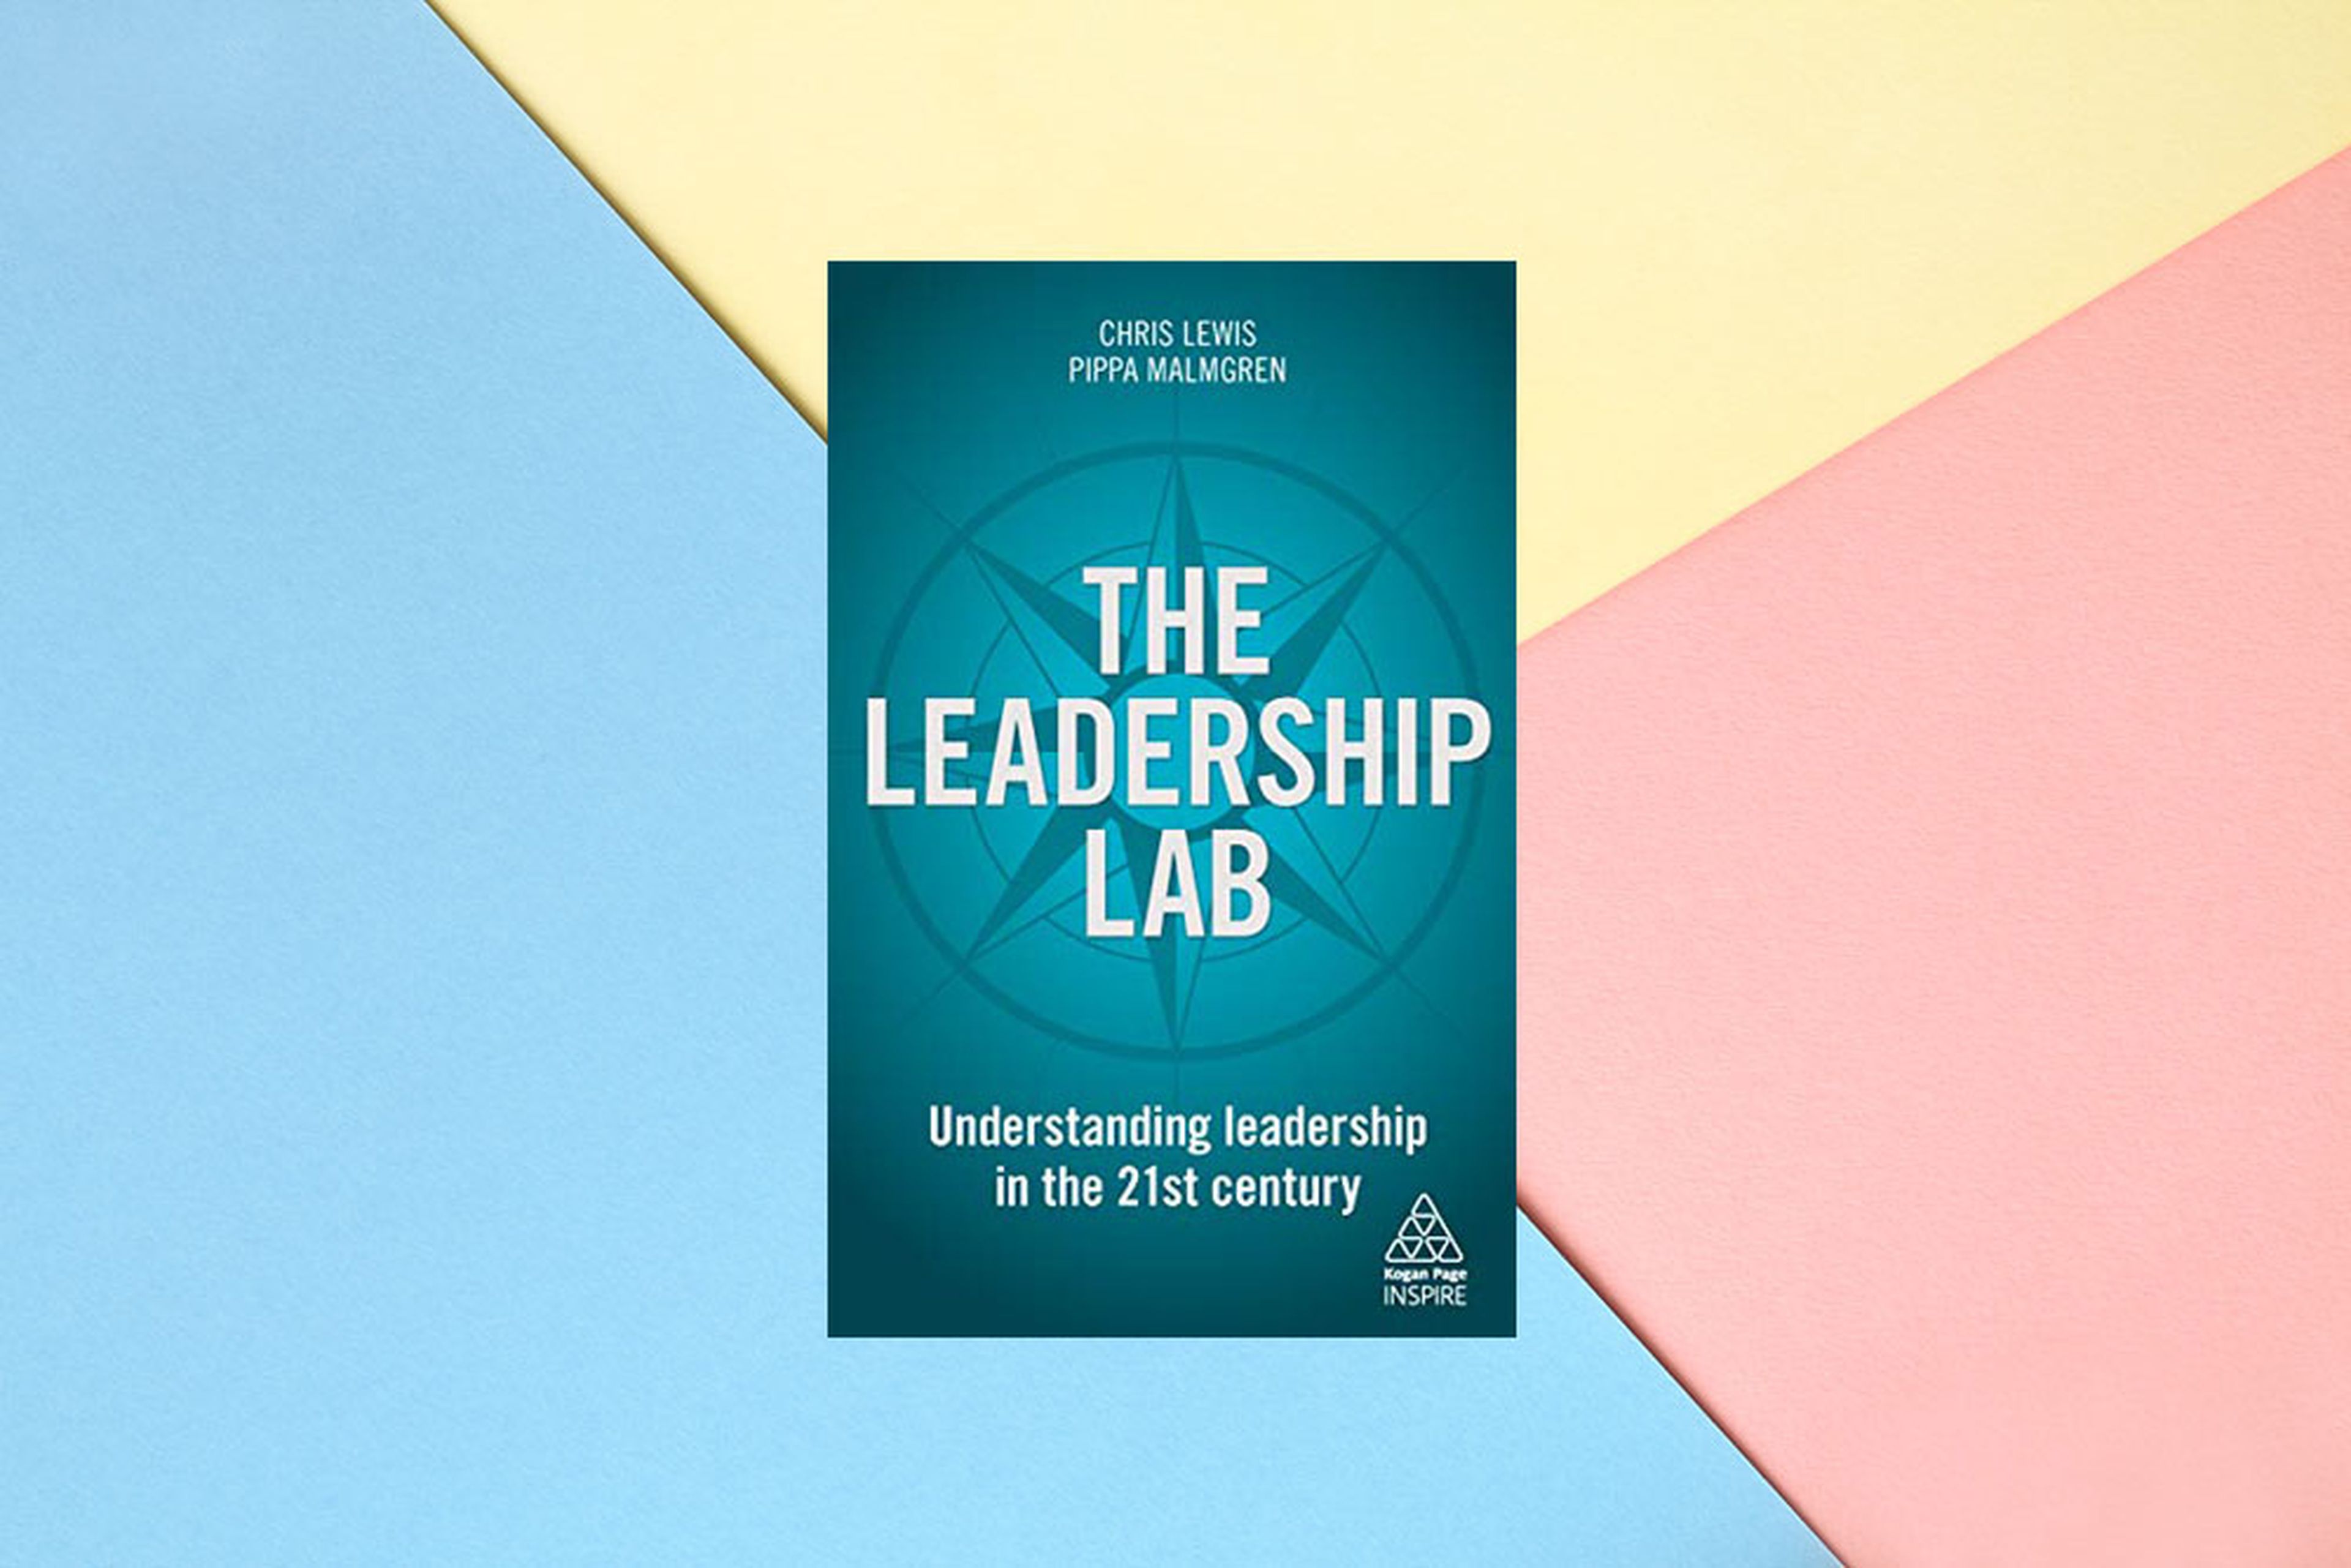 The leadership lab